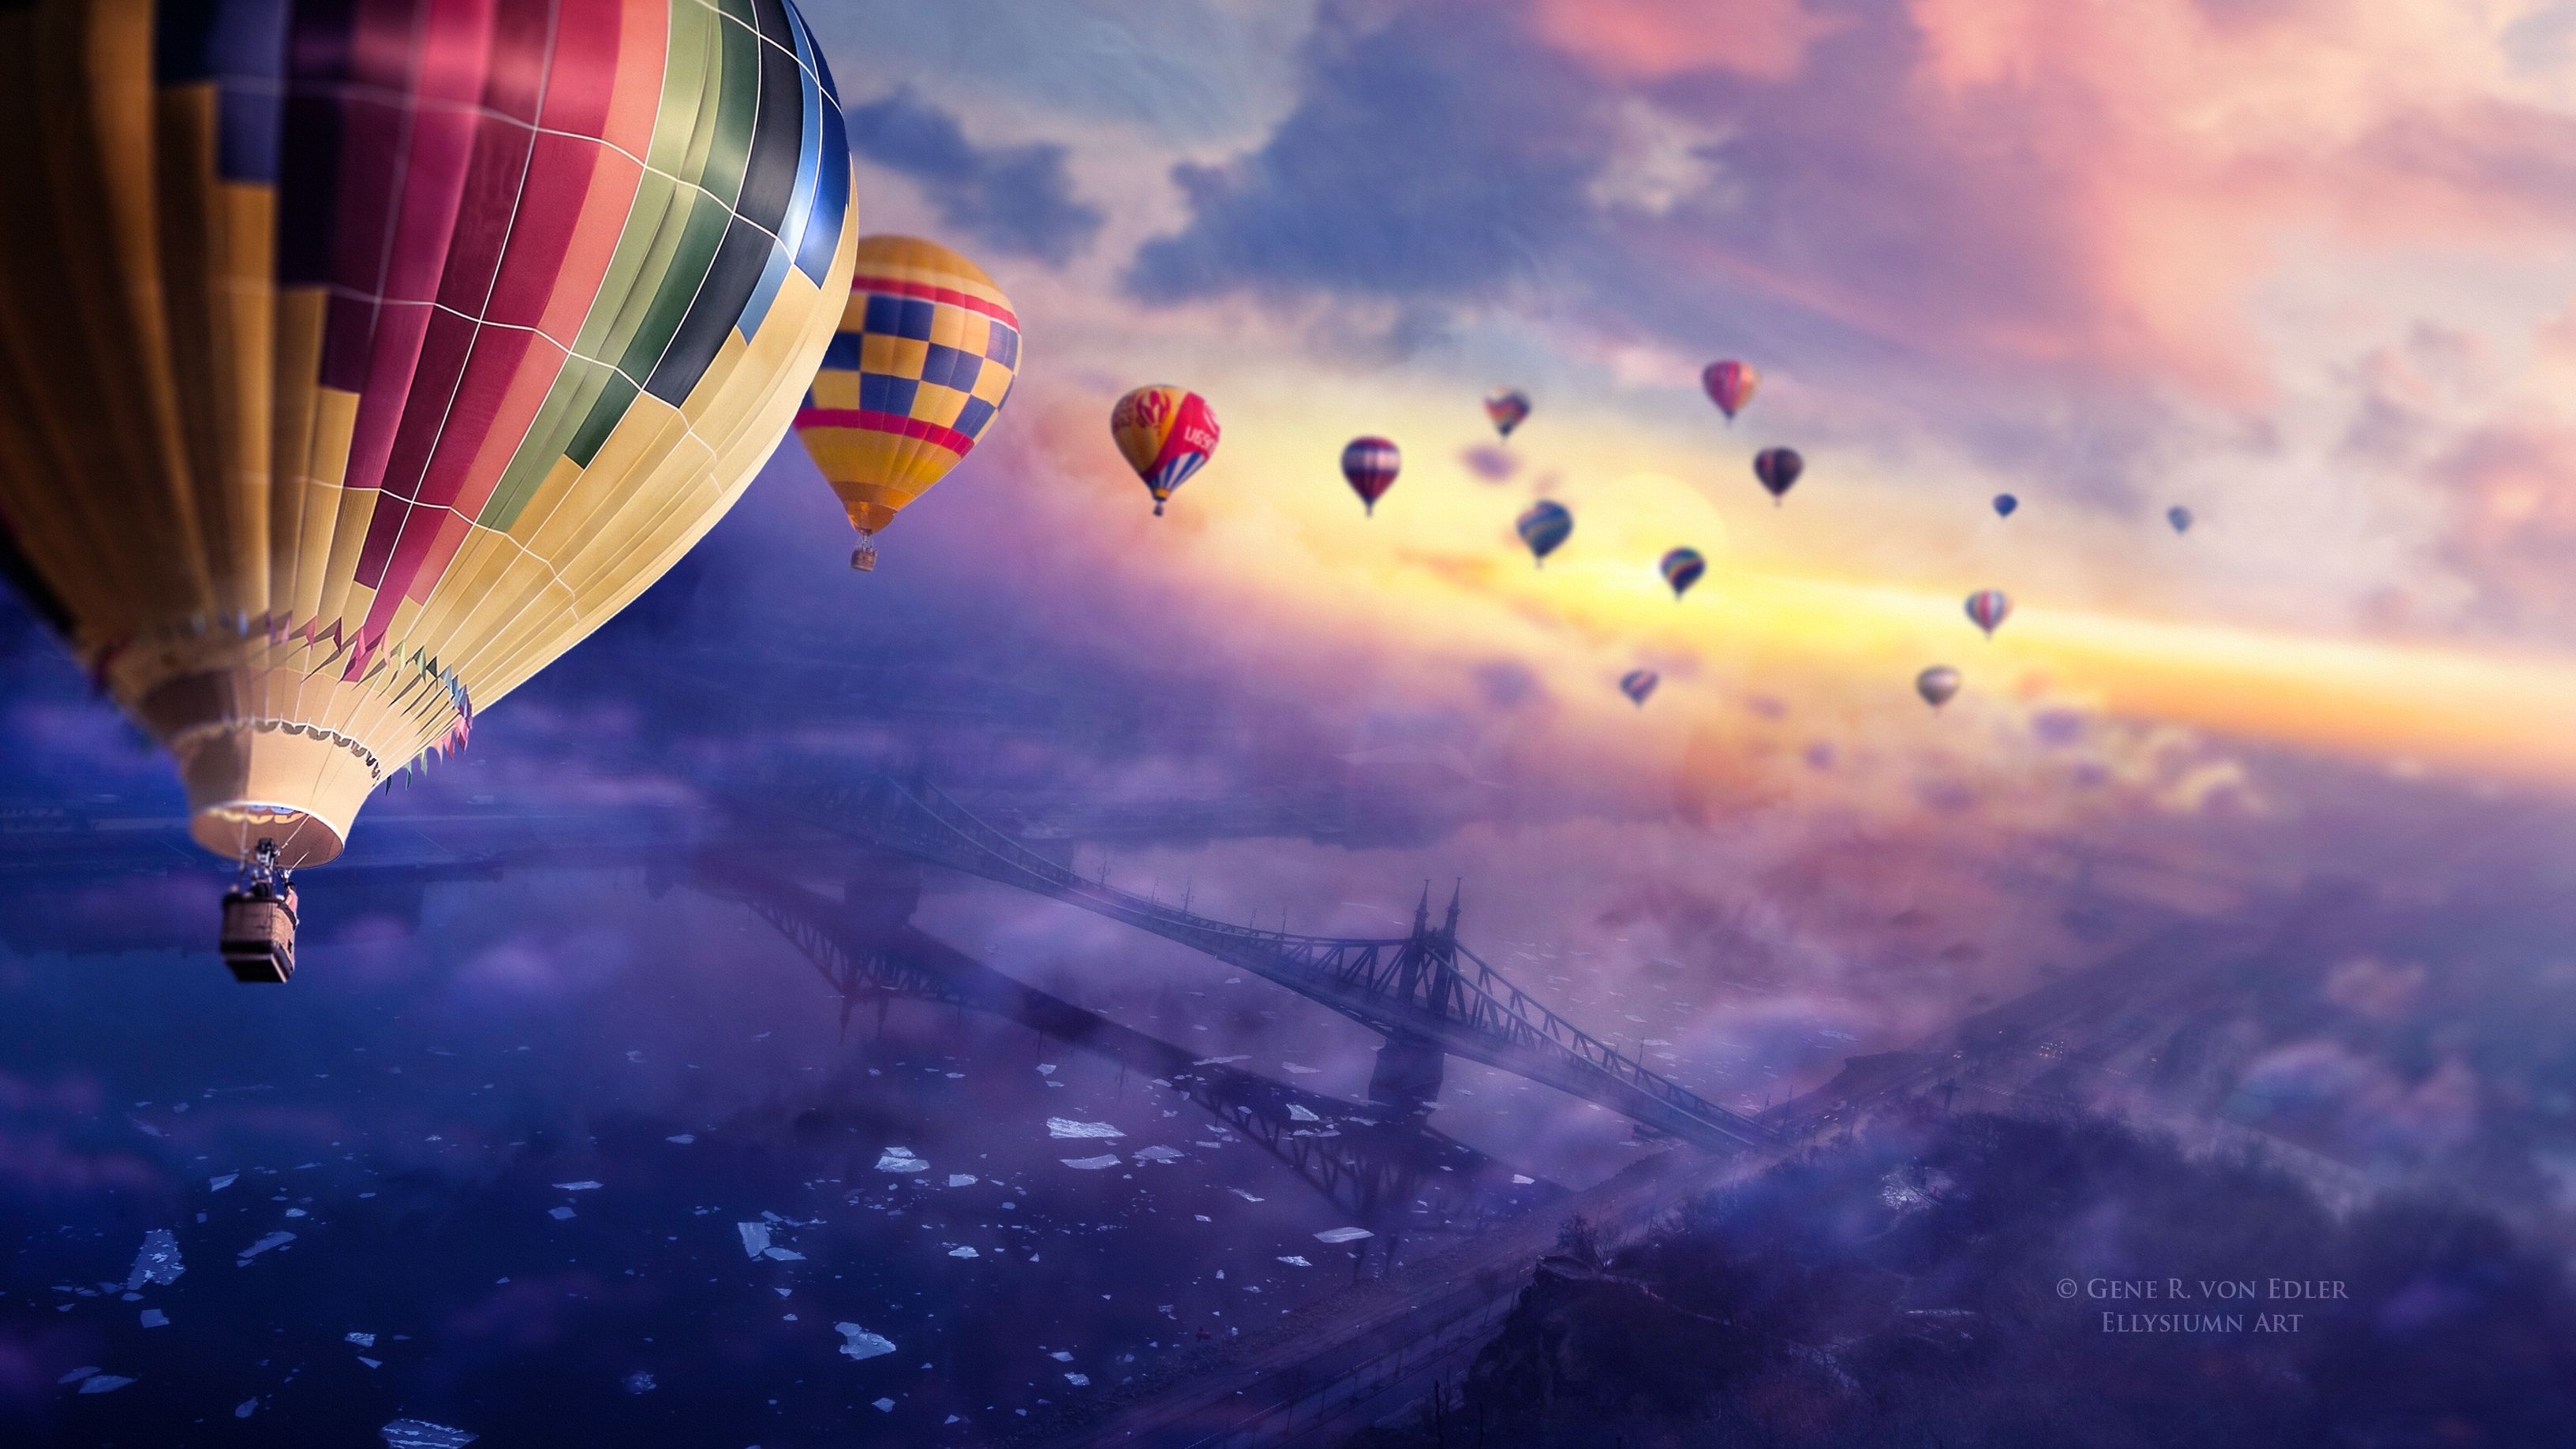 Hot Air Balloon: Artwork, Aerostat, Air Regatta High Above The City. 3270x1840 HD Background.